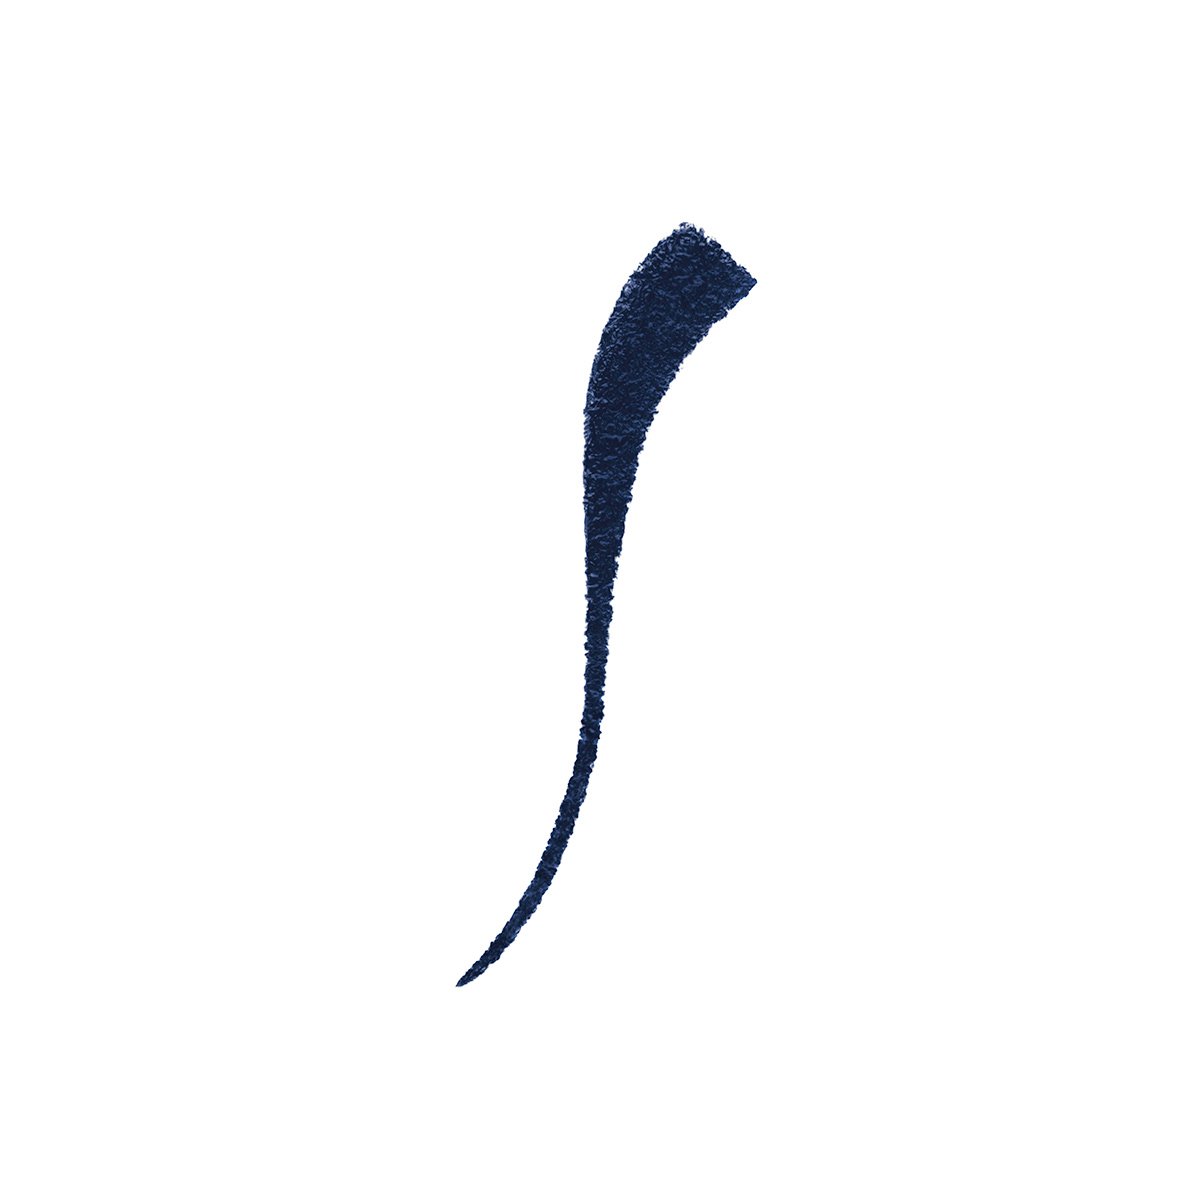 INDIGO JAPONAIS - DARK BLUE - dark blue liquid eyeliner with precise brush tip